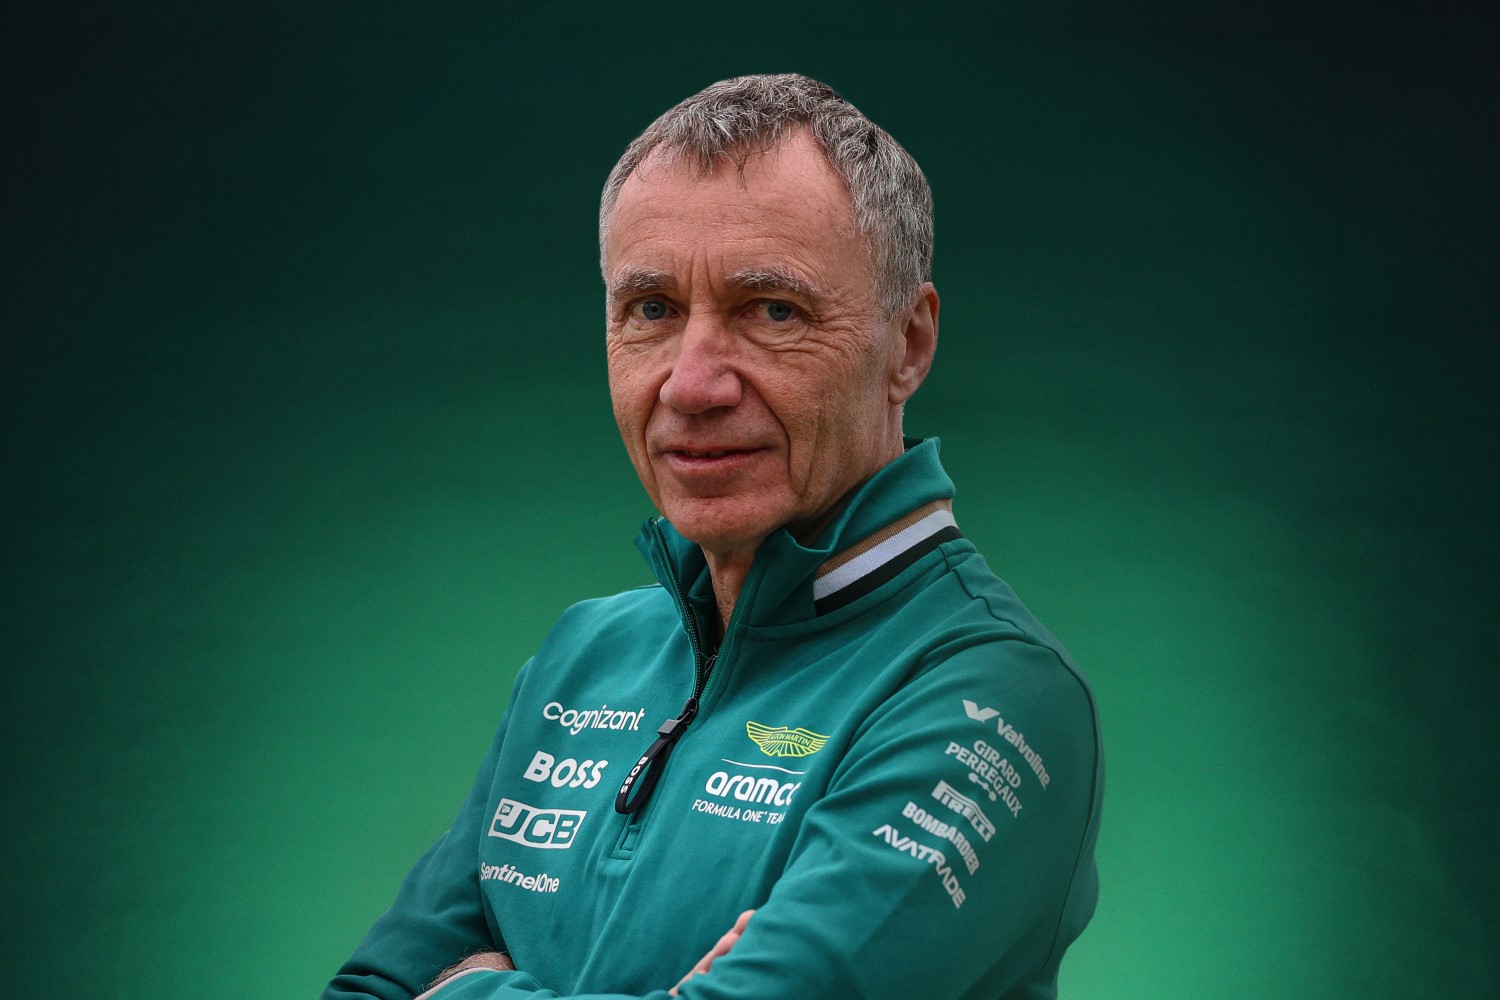 Bob Bell, Executive Director - Technical of Aston Martin F1 Team